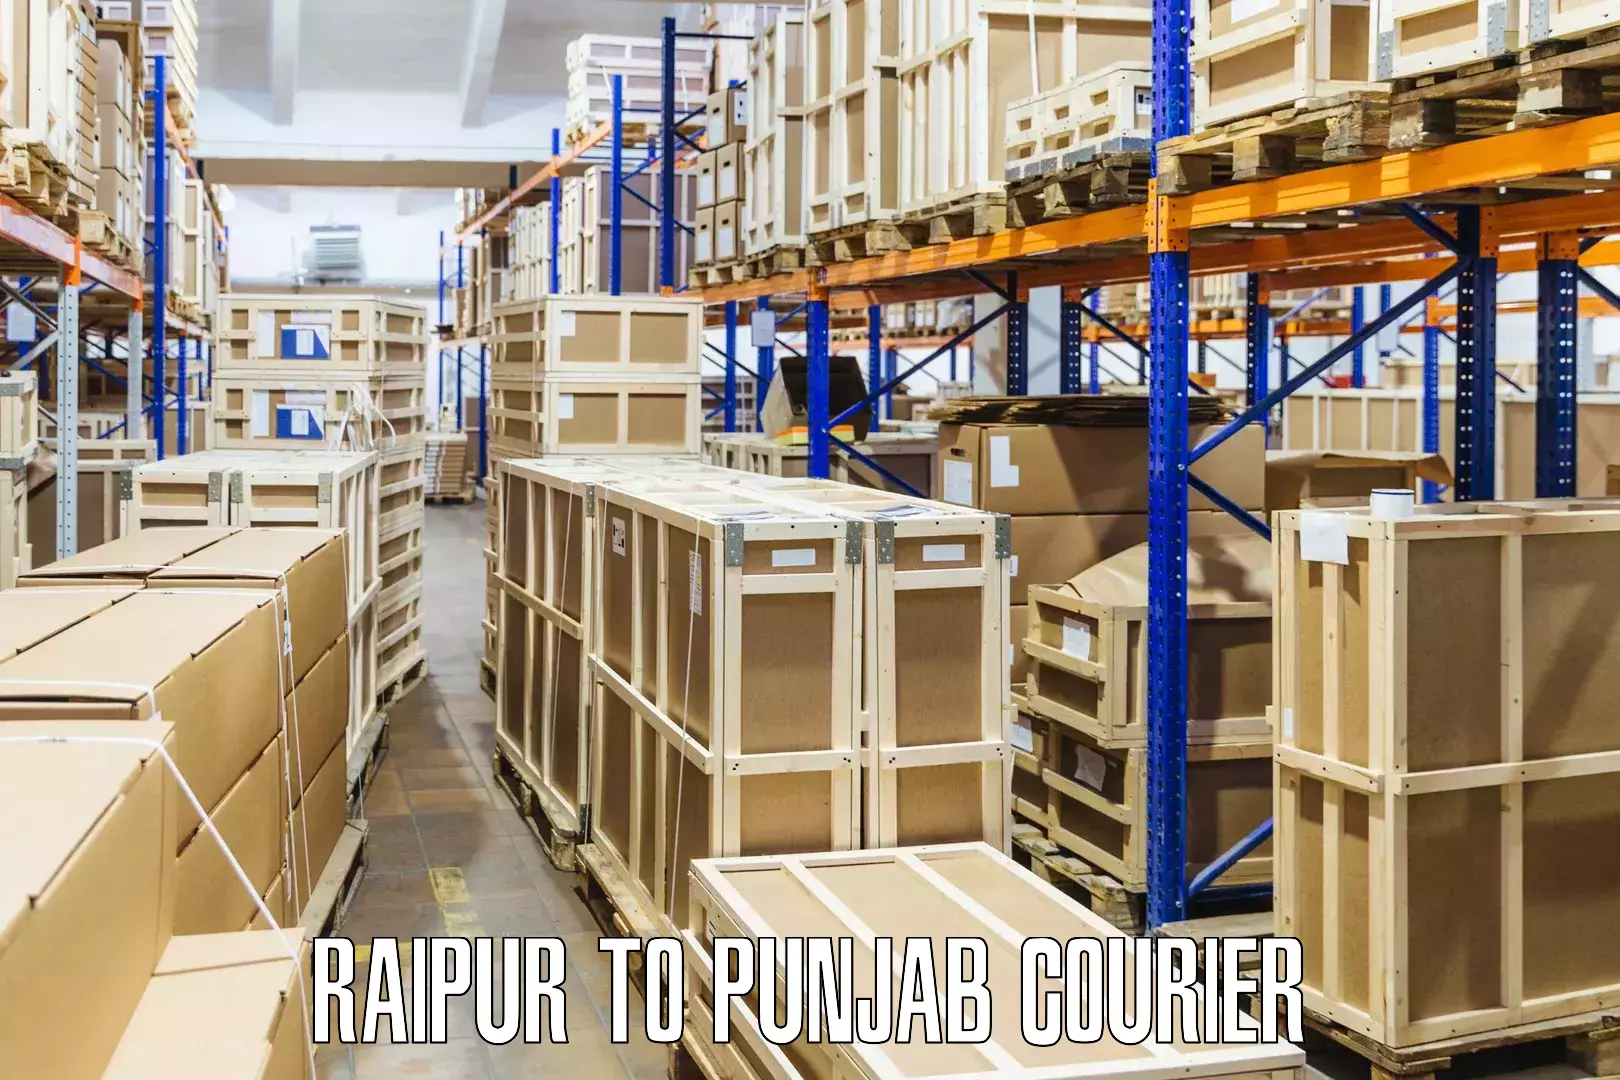 Comprehensive shipping network Raipur to Barnala